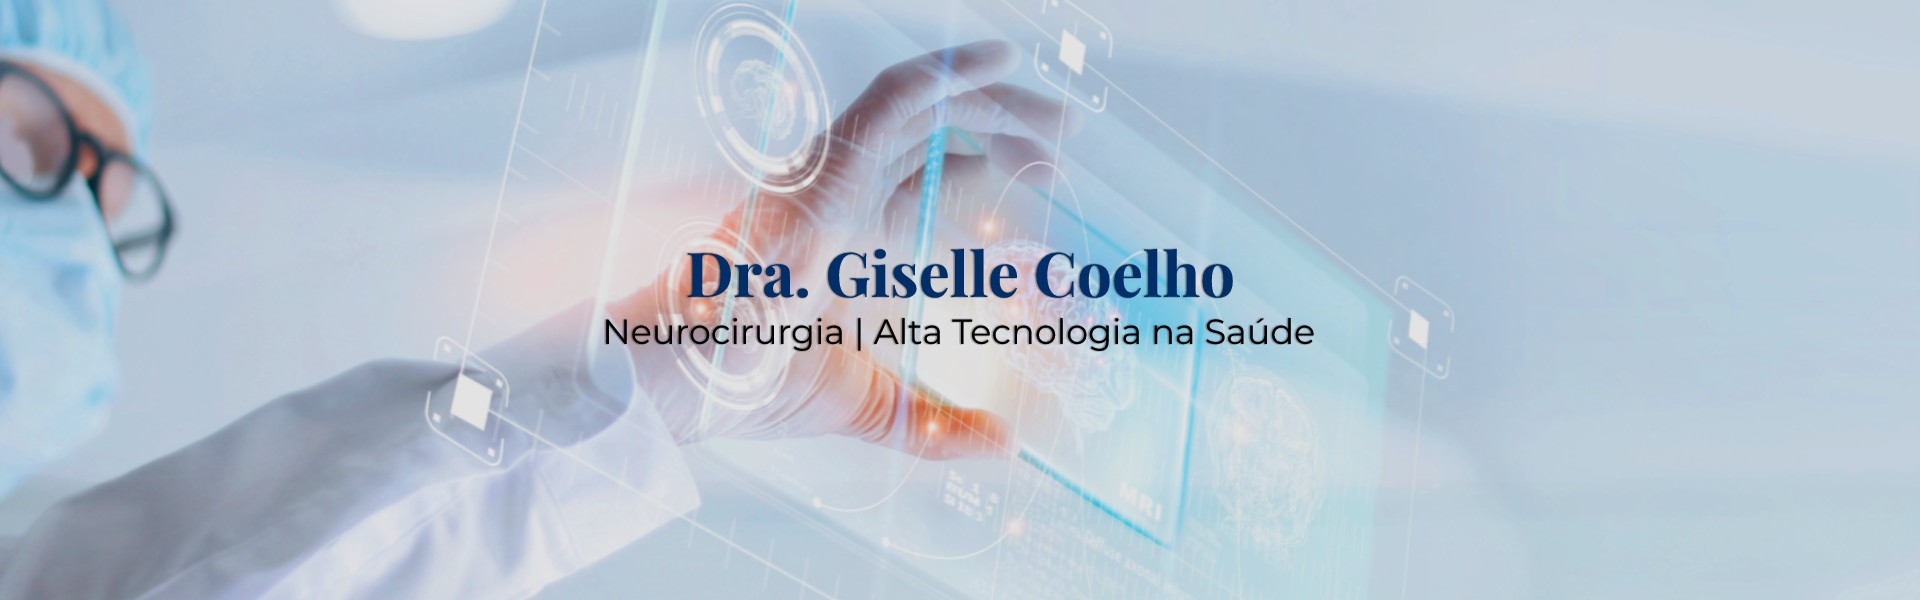 Dra. Giselle Coelho - Neurocirurgia